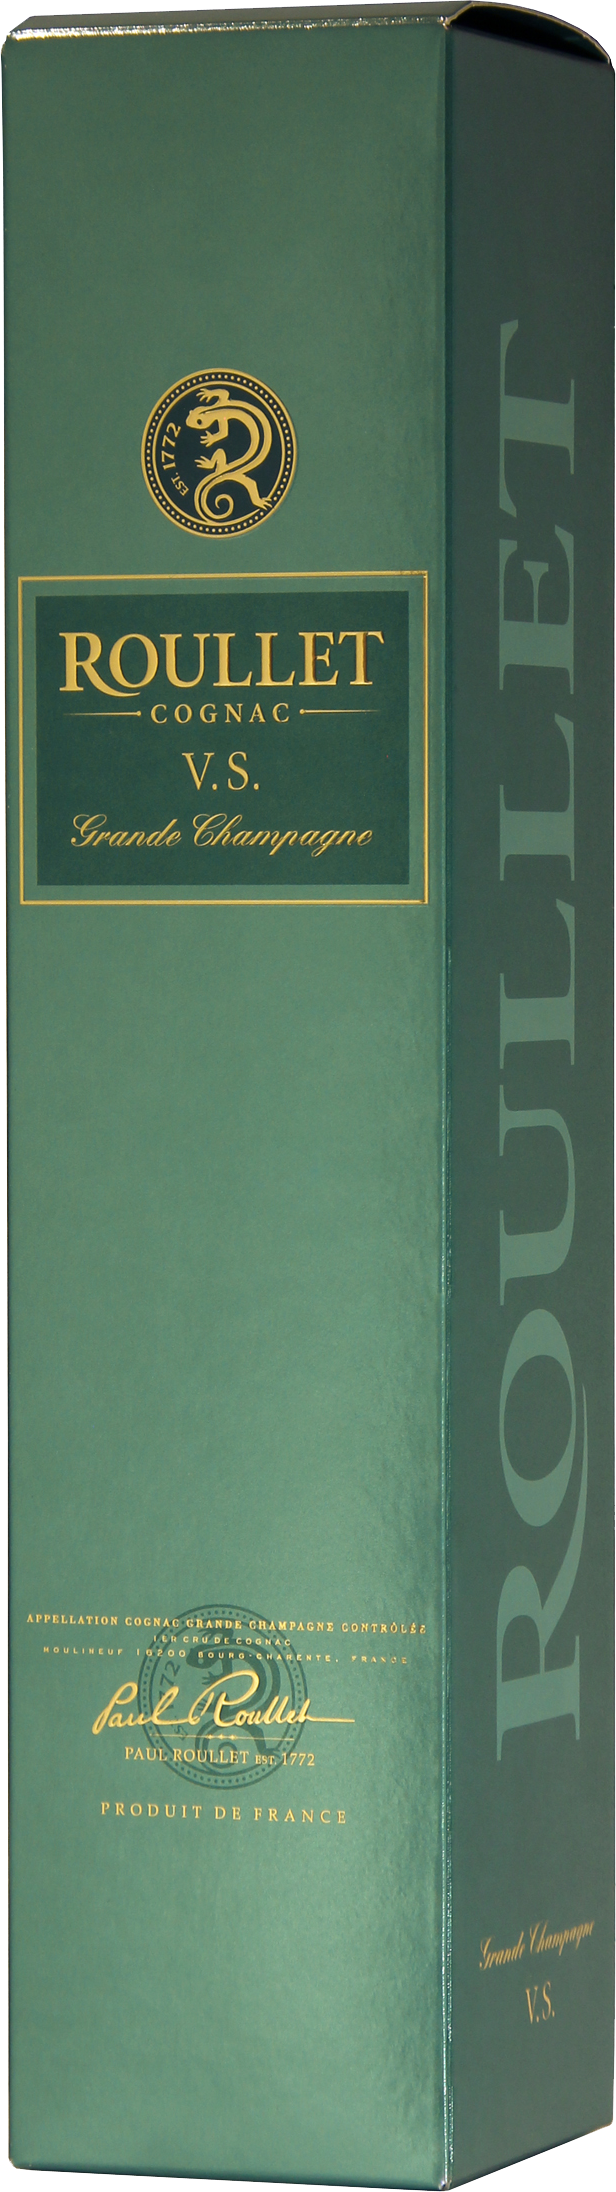 Roullet Cognac VS Grande champagne avec étui www.luxfood-shop.fr